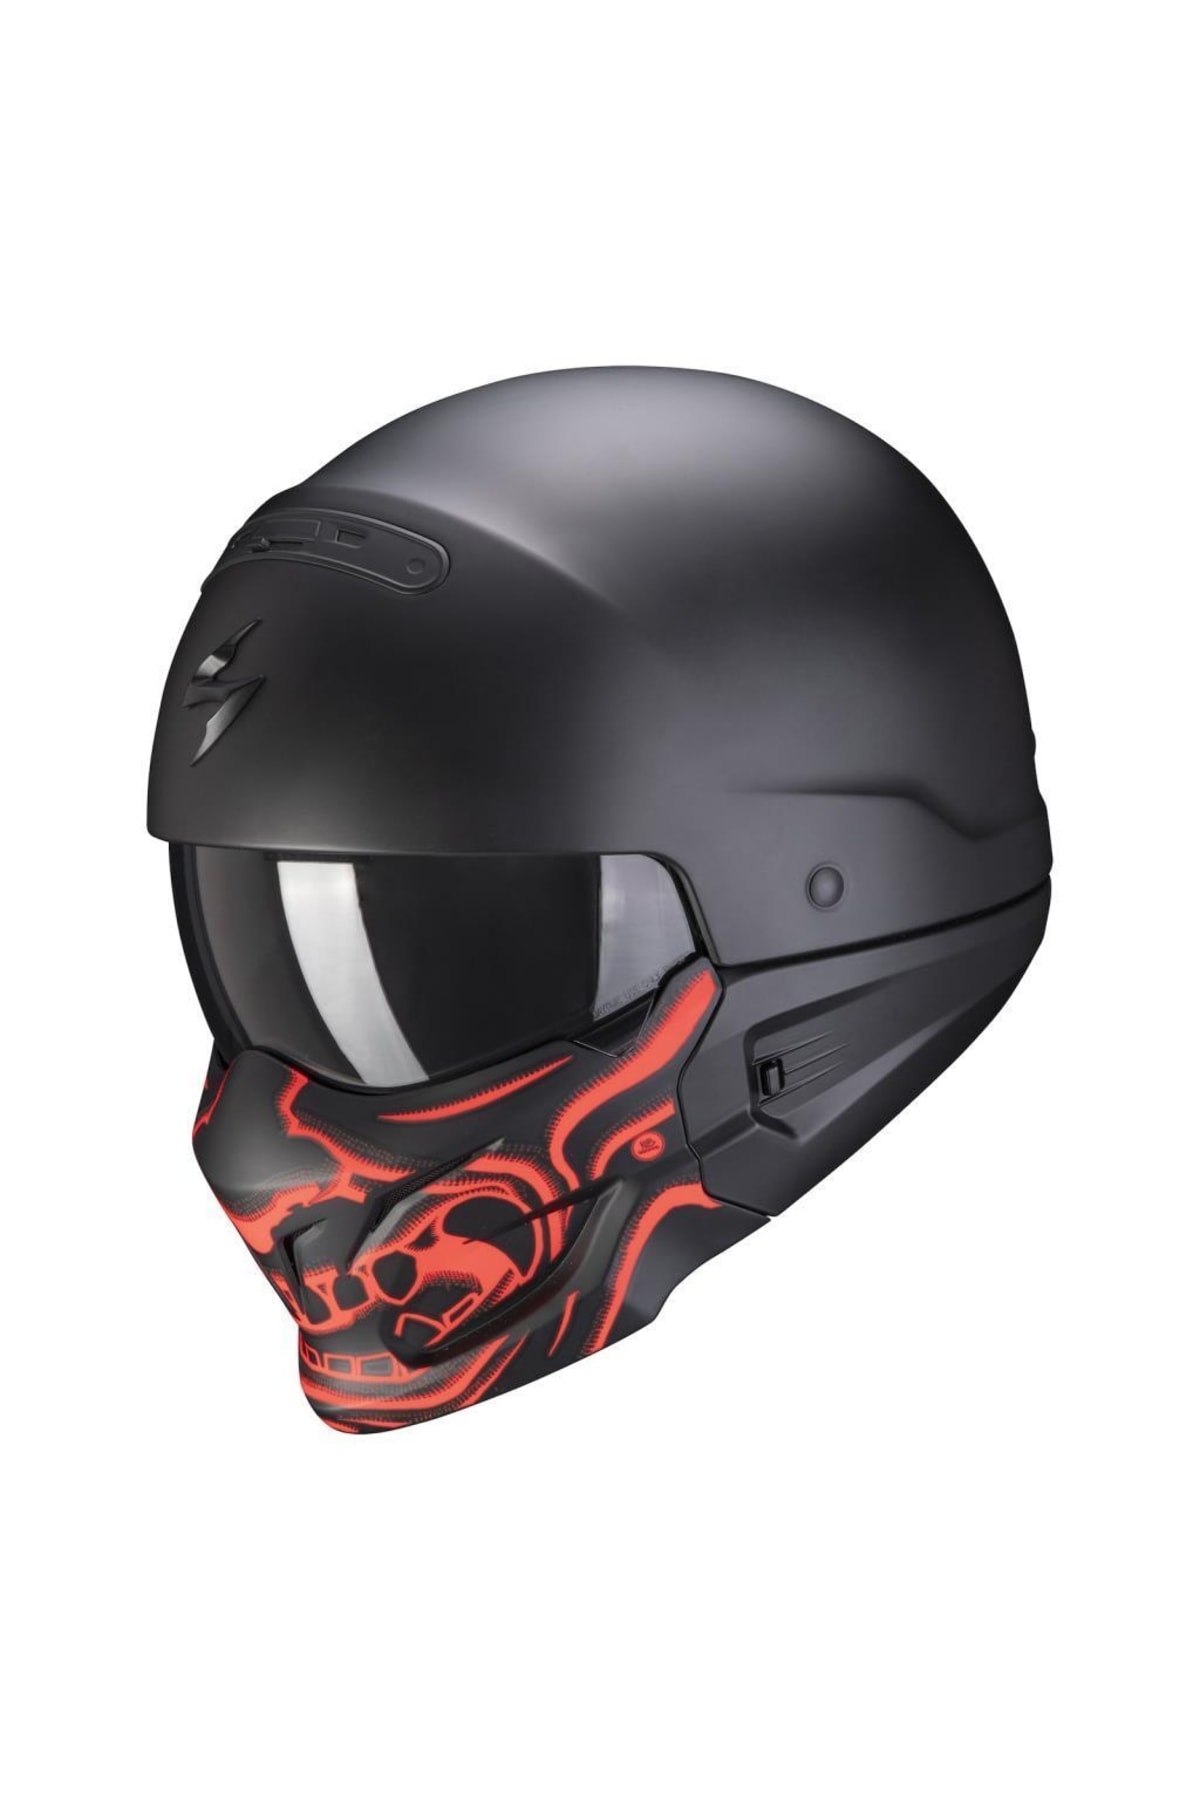 Scorpion Exo Combat Evo Samurai Moduler Motosiklet Kaskı (mat Siyah Kırmızı) NY10056